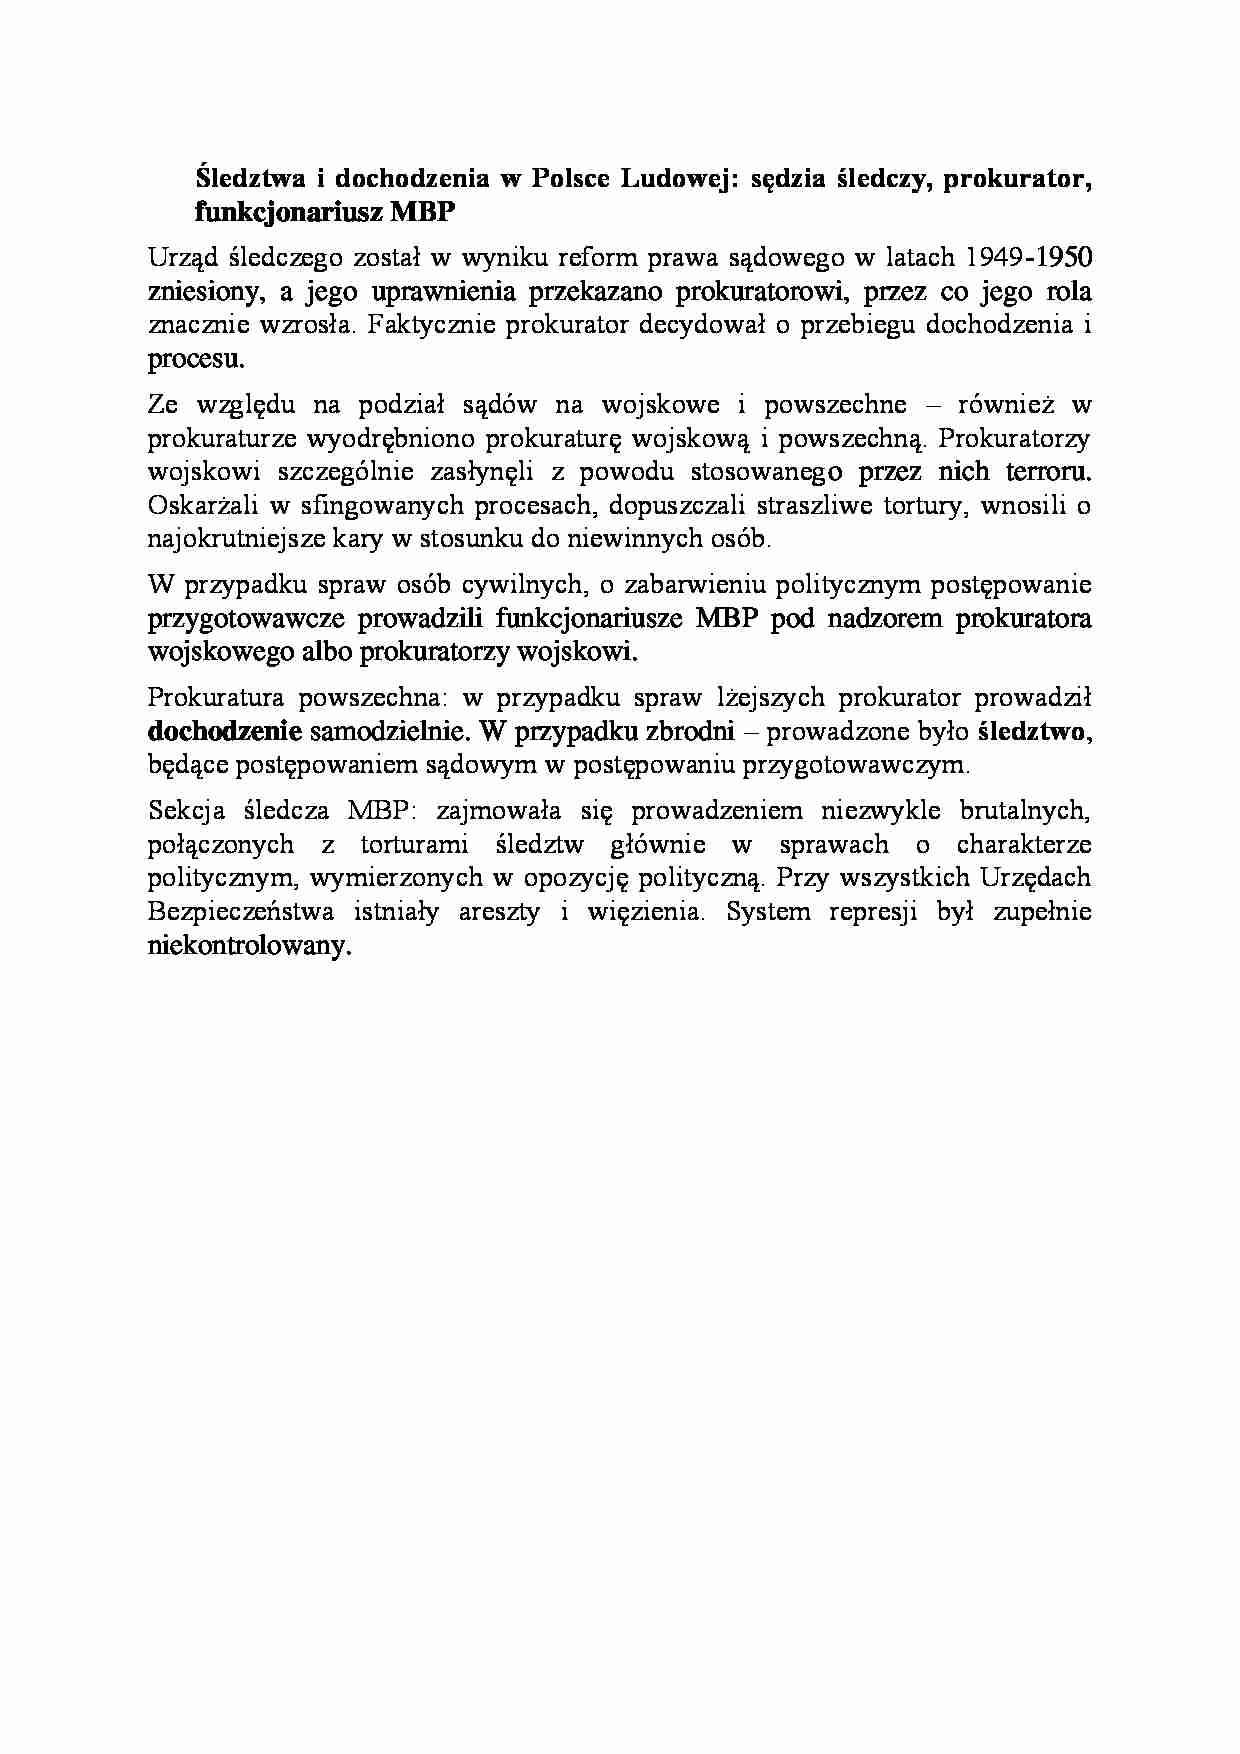 Śledztwa i dochodzenia w Polsce Ludowej-opracowanie - strona 1